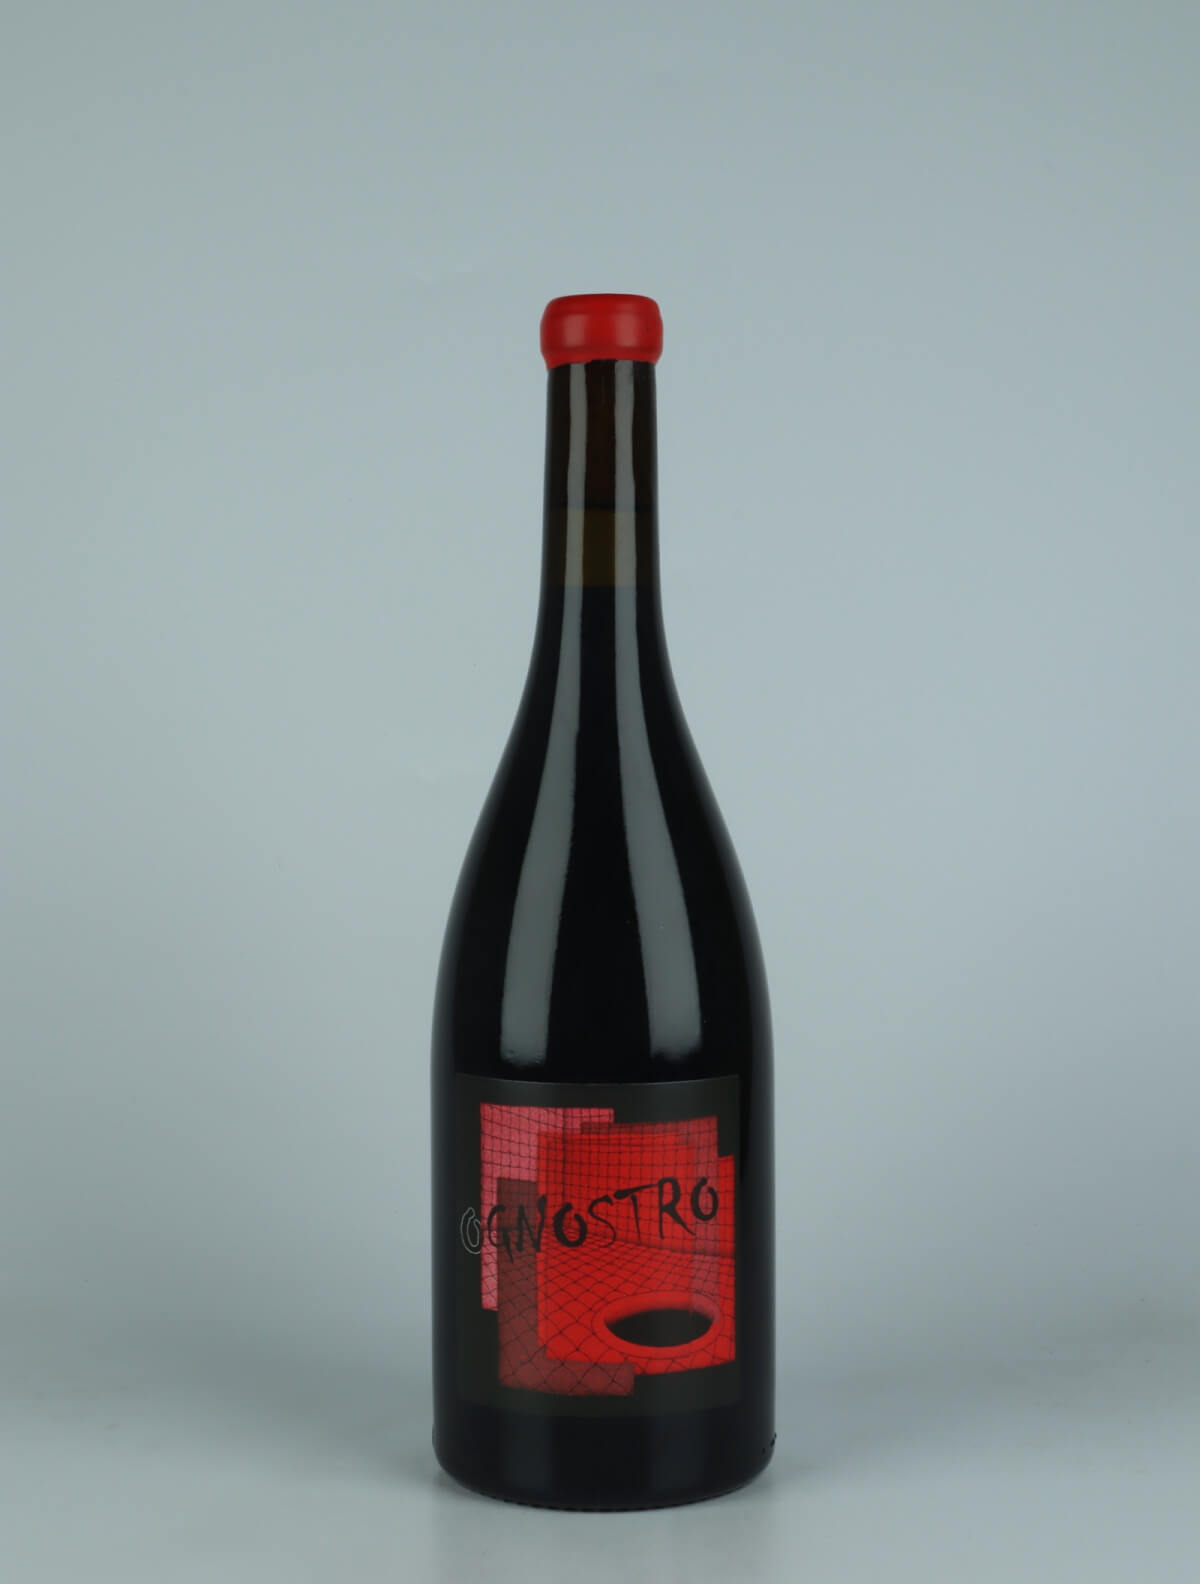 En flaske 2021 Ognostro Rosso Rødvin fra Marco Tinessa, Campanien i Italien